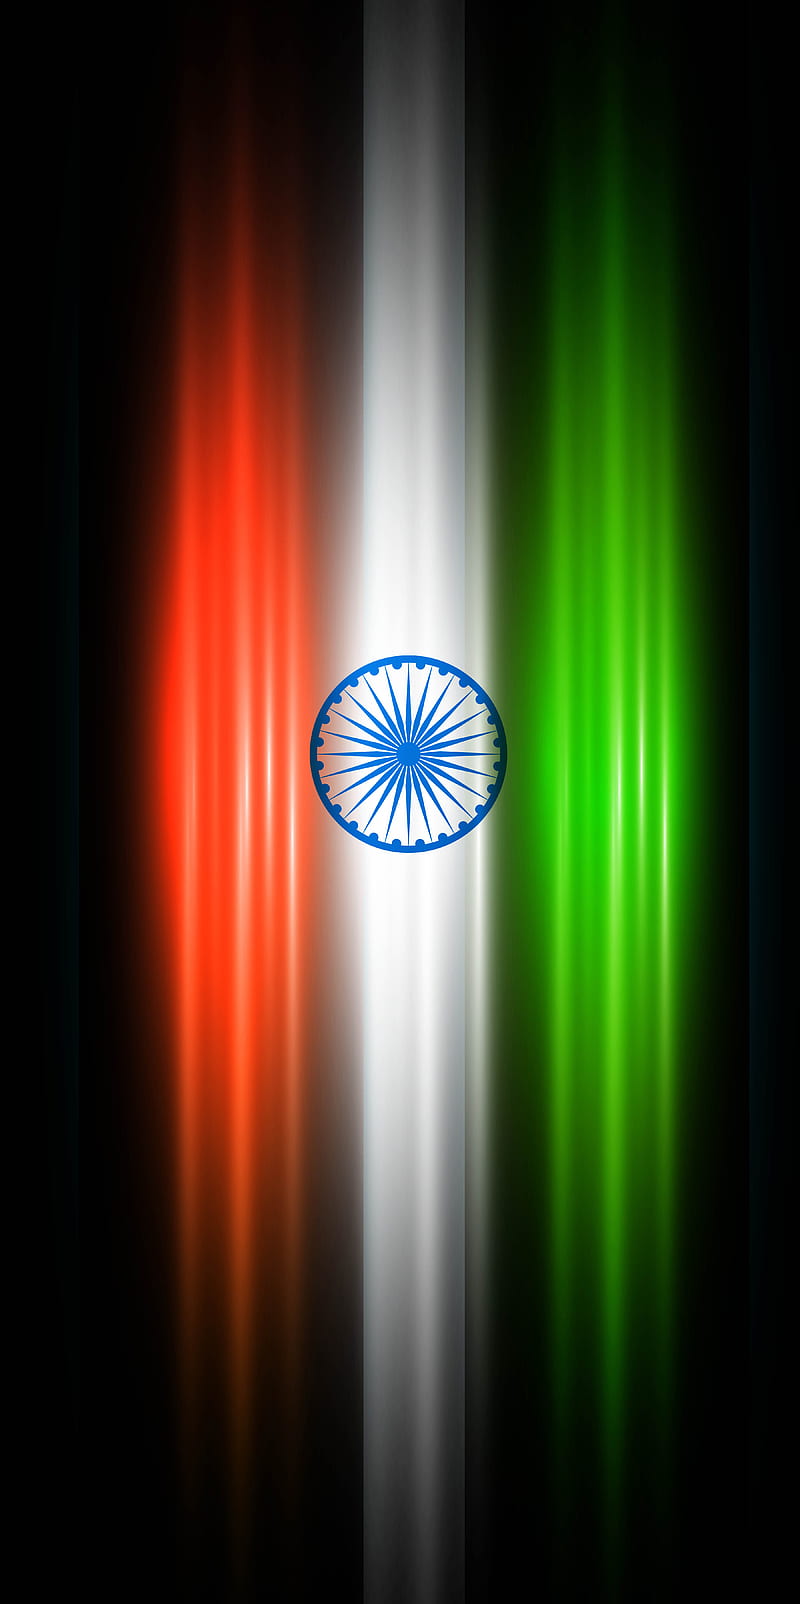 Indian Flag Wallpaper HD Download  ShayariMaza